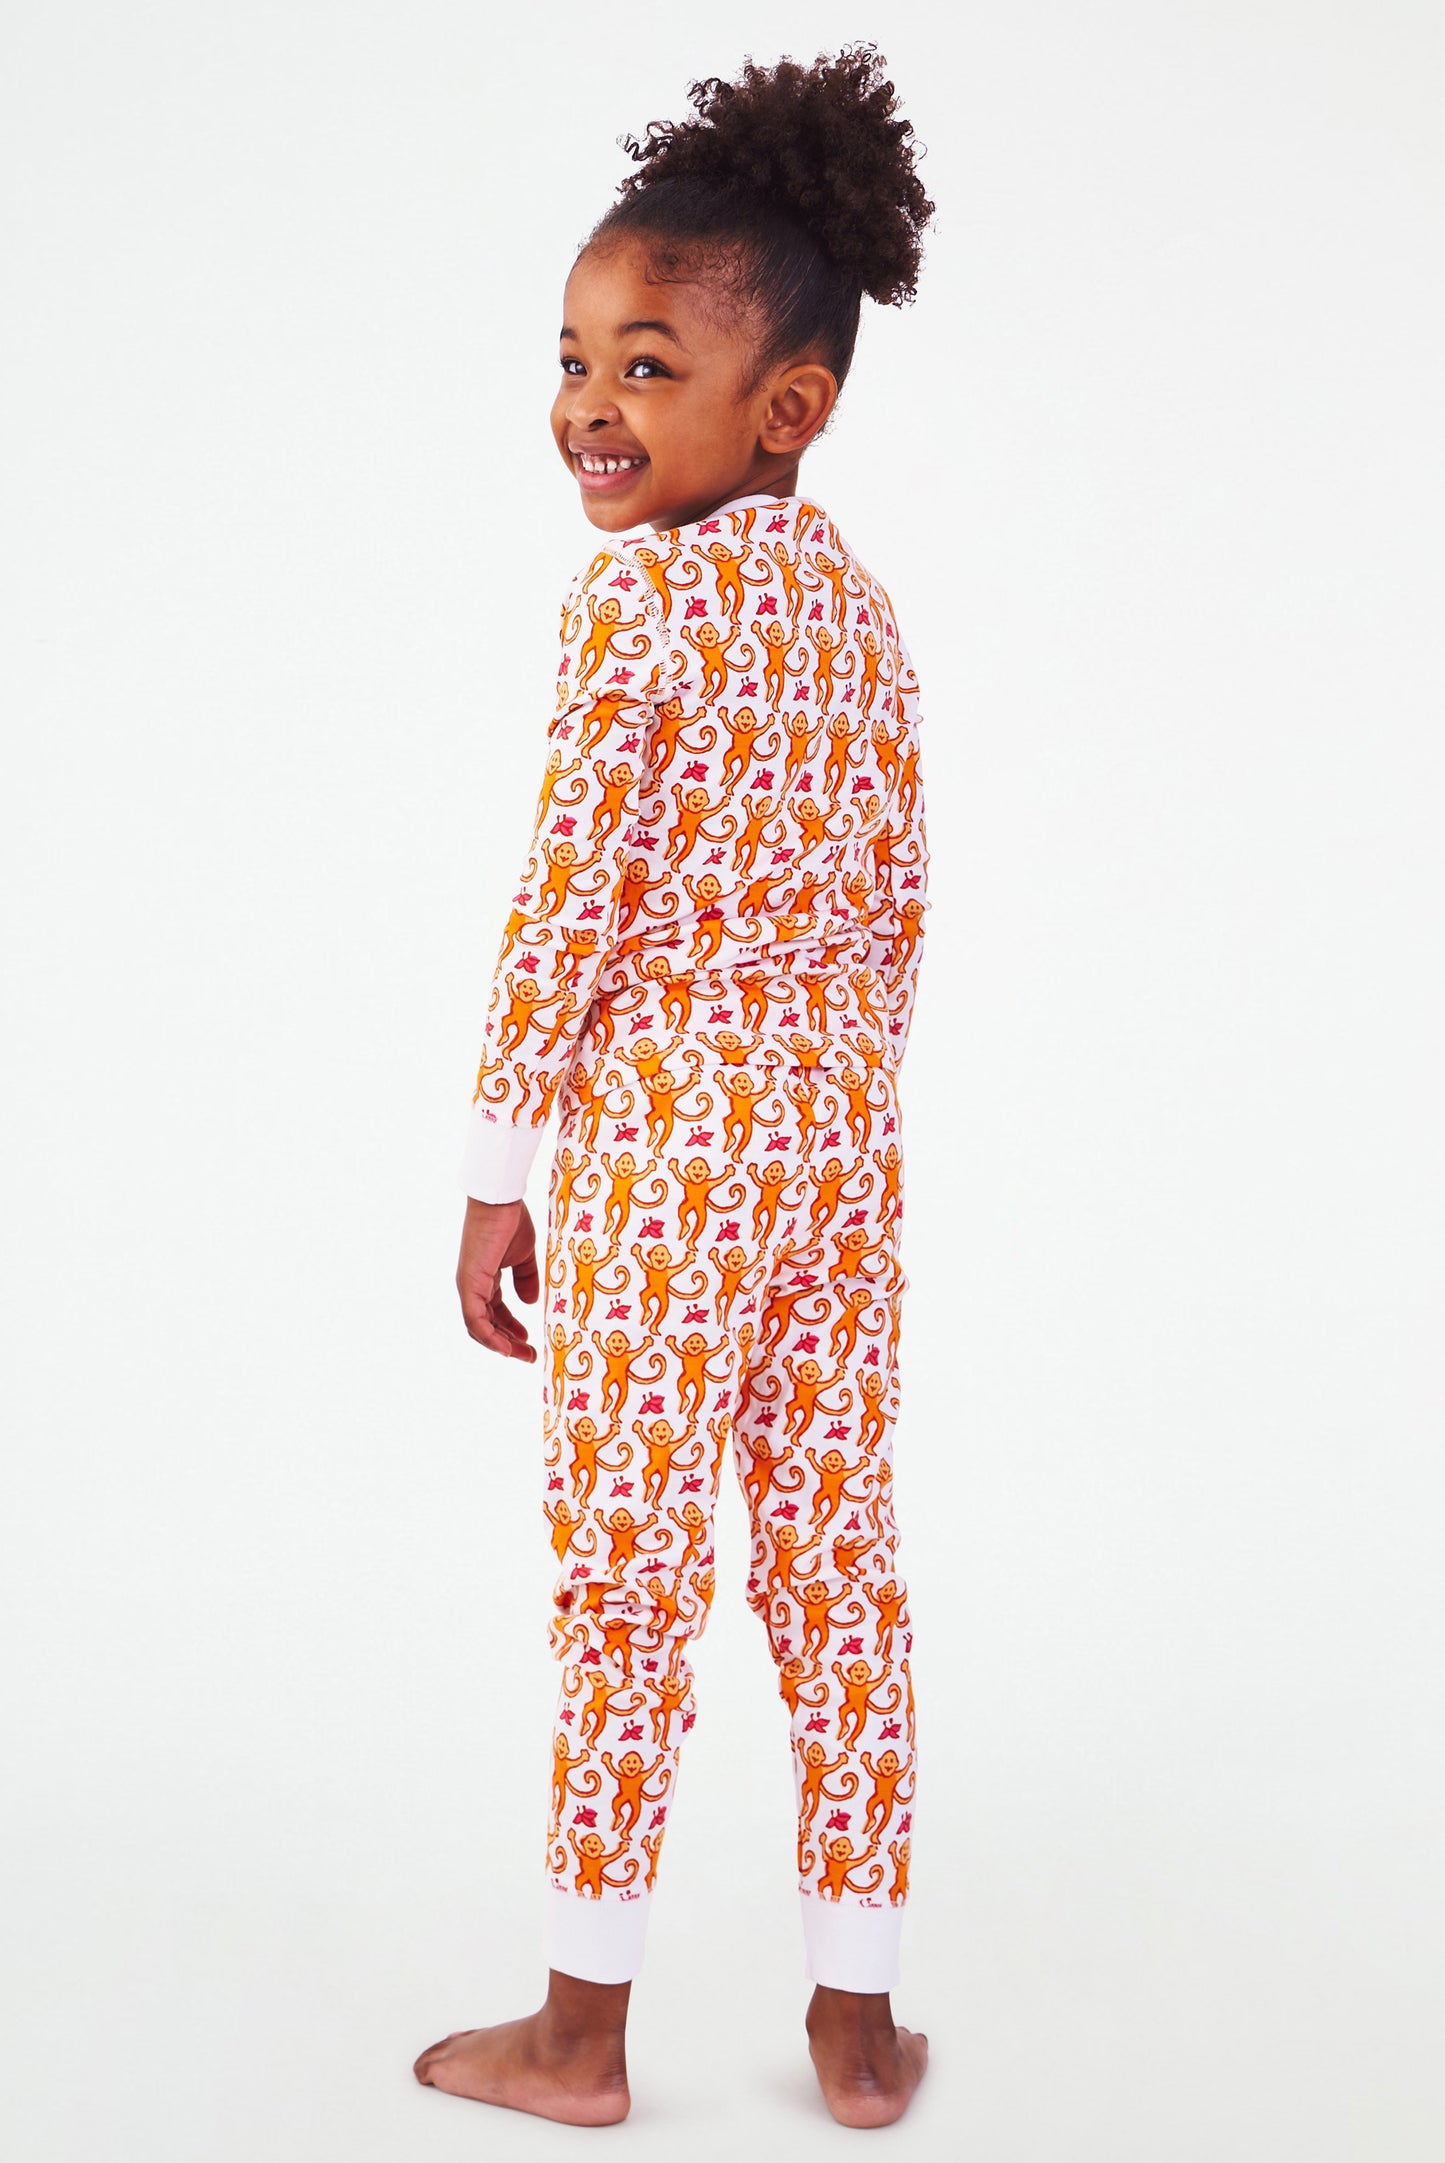 Roller Rabbit Orange Monkey Kids Pajamas